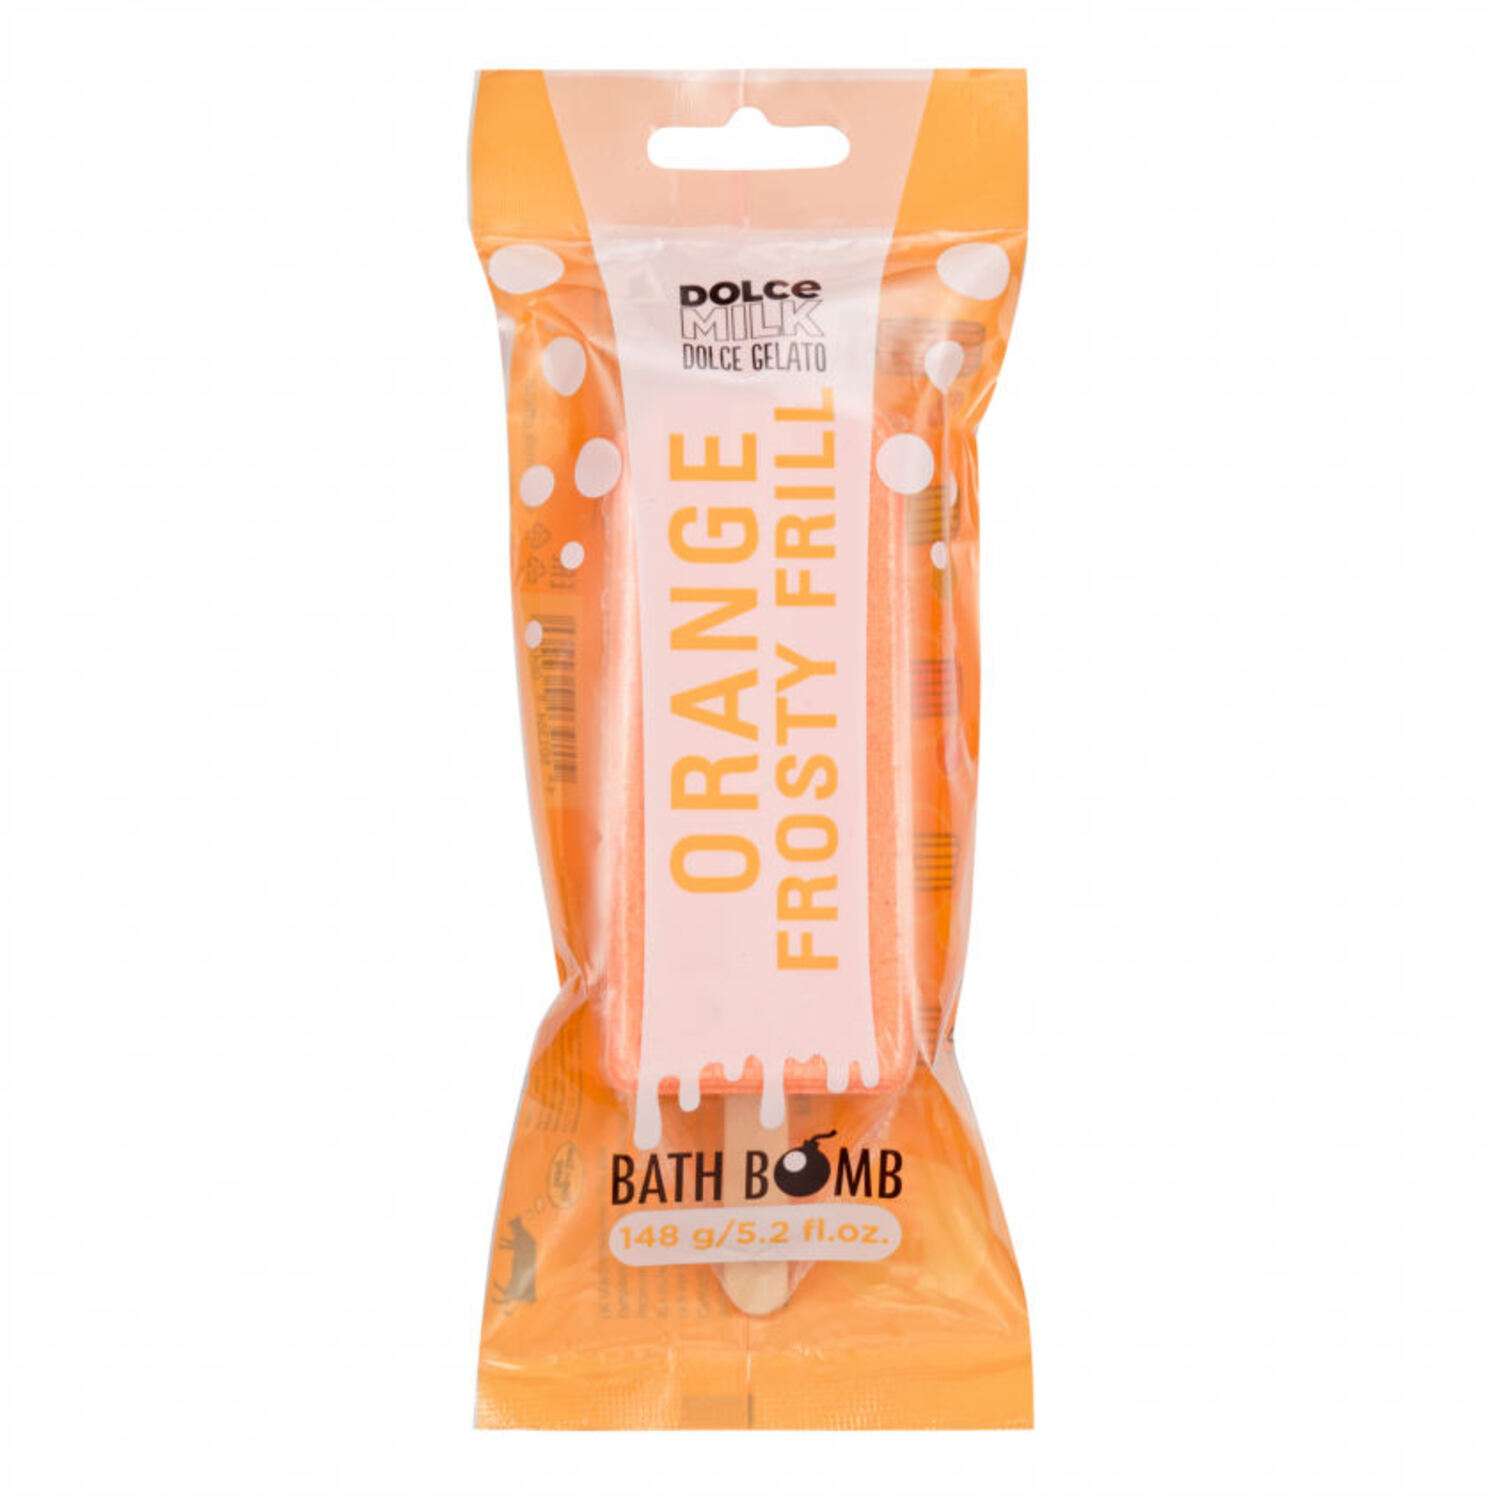 Соль для ванны Dolce milk Бурлящее эскимо Orange 148г CLOR49098 - фото 1